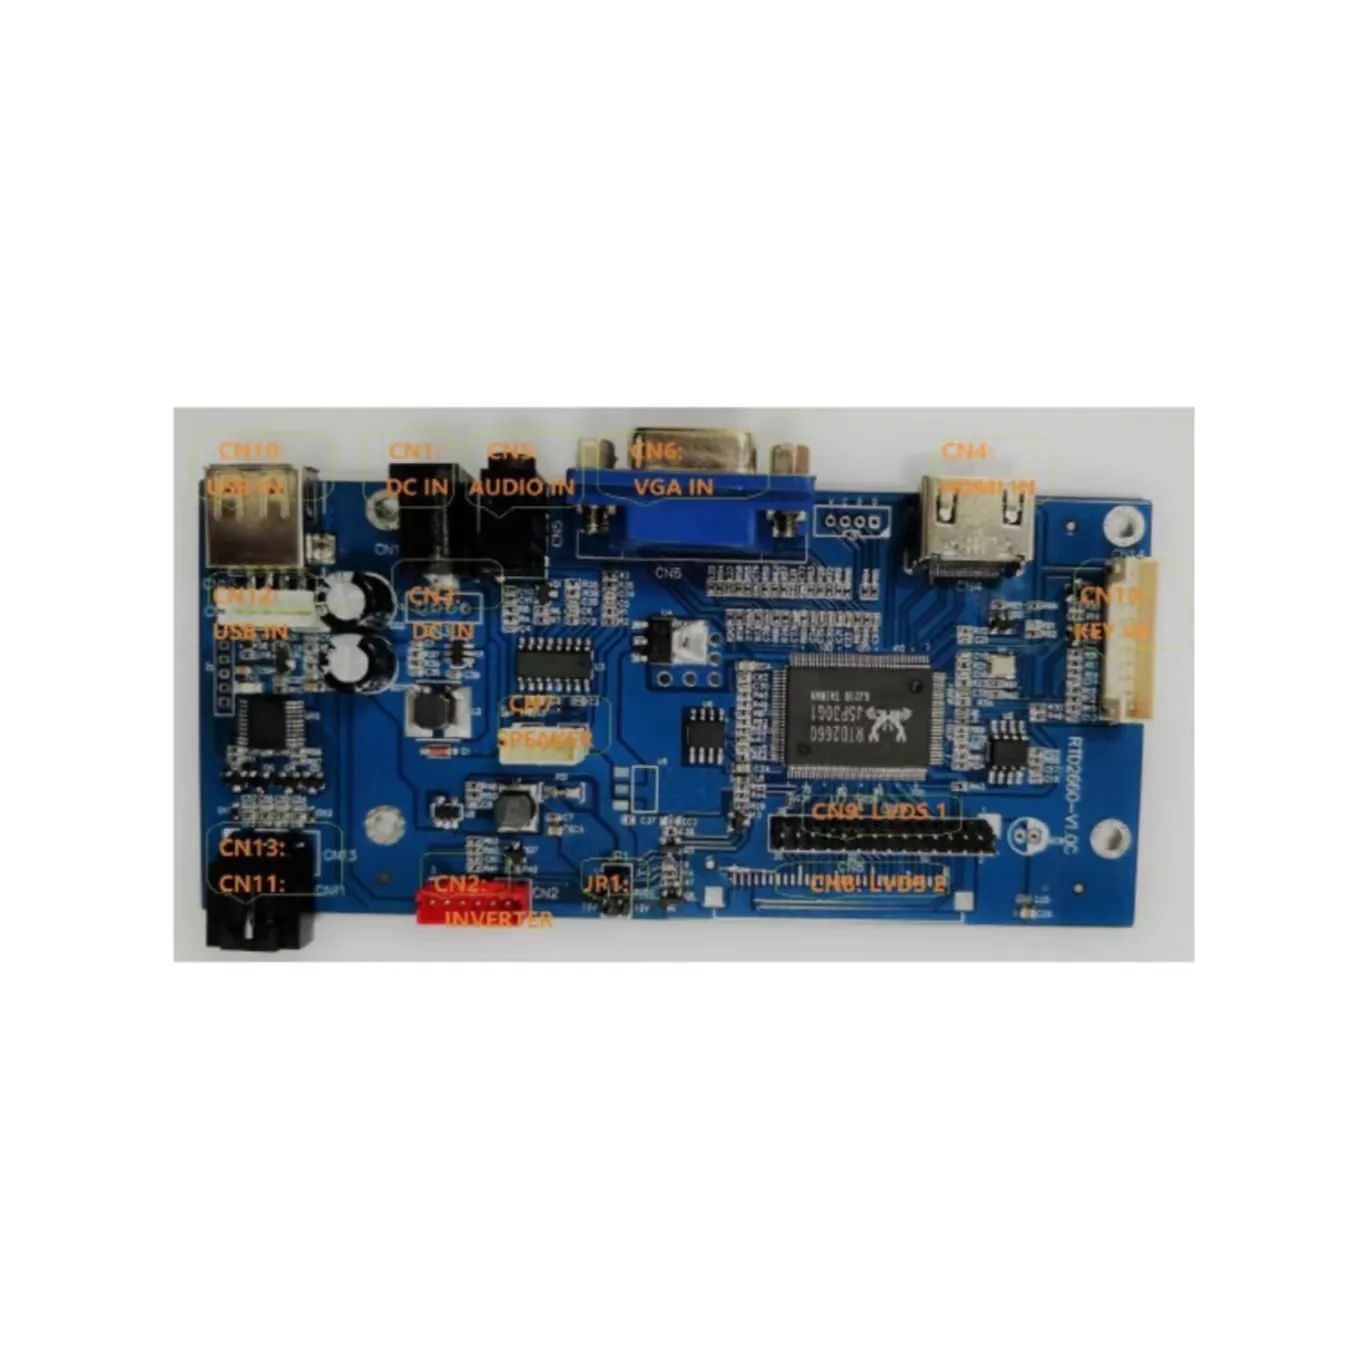 Thâm quyến fangxian tùy chỉnh phổ Multilayer PCB LCD Bo mạch chủ Màn hình LCD VGA Bảng điều khiển và HD mi Board